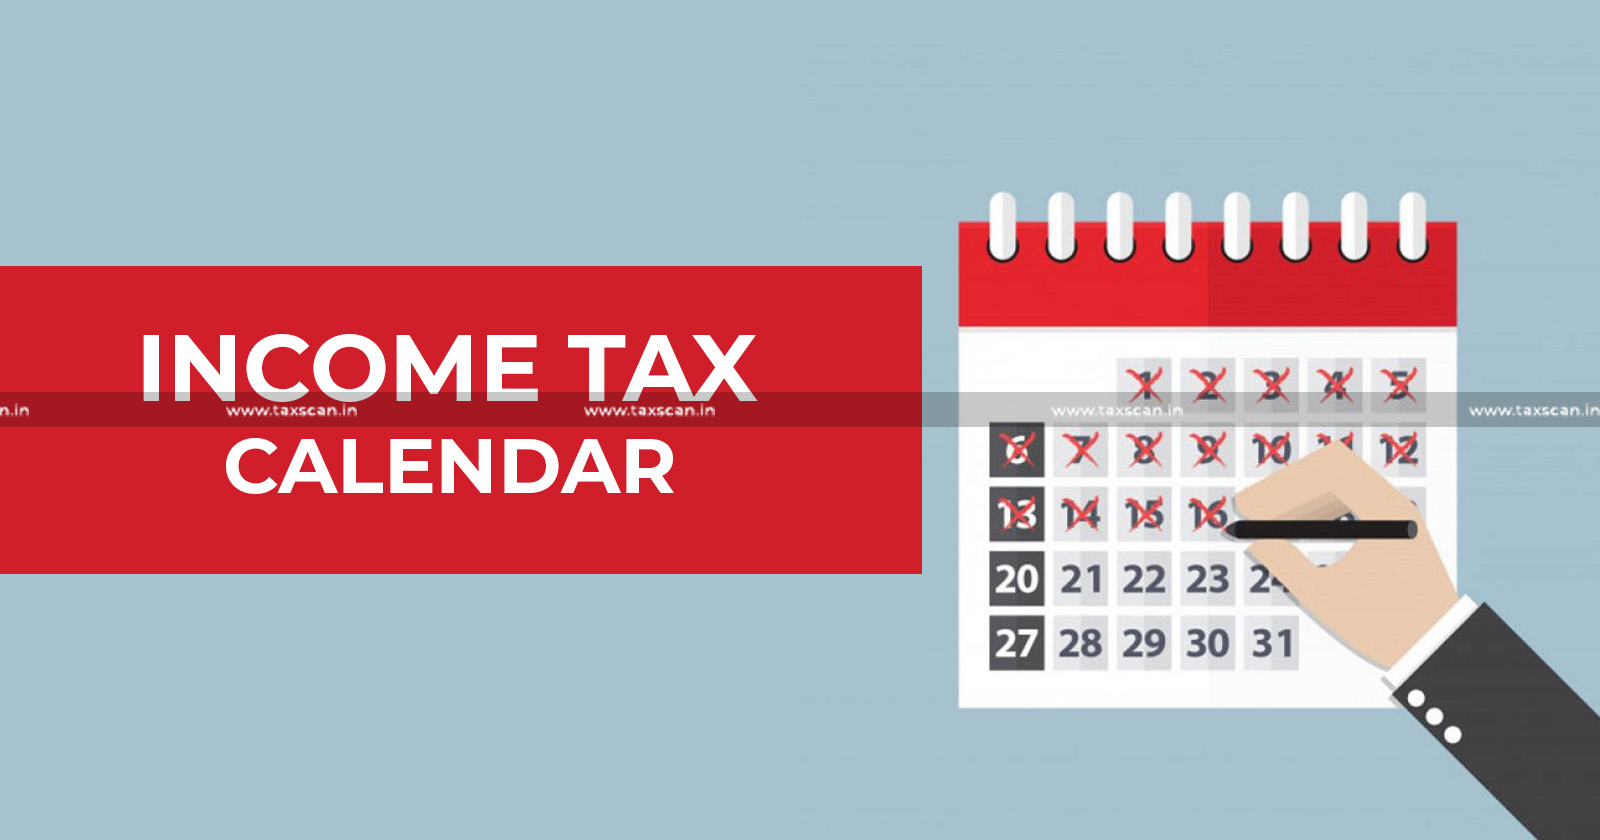 Income Tax due dates - Income Tax - due dates - Not to Miss in August - August - Income Tax due dates in August - August due dates - Tax - Taxscan